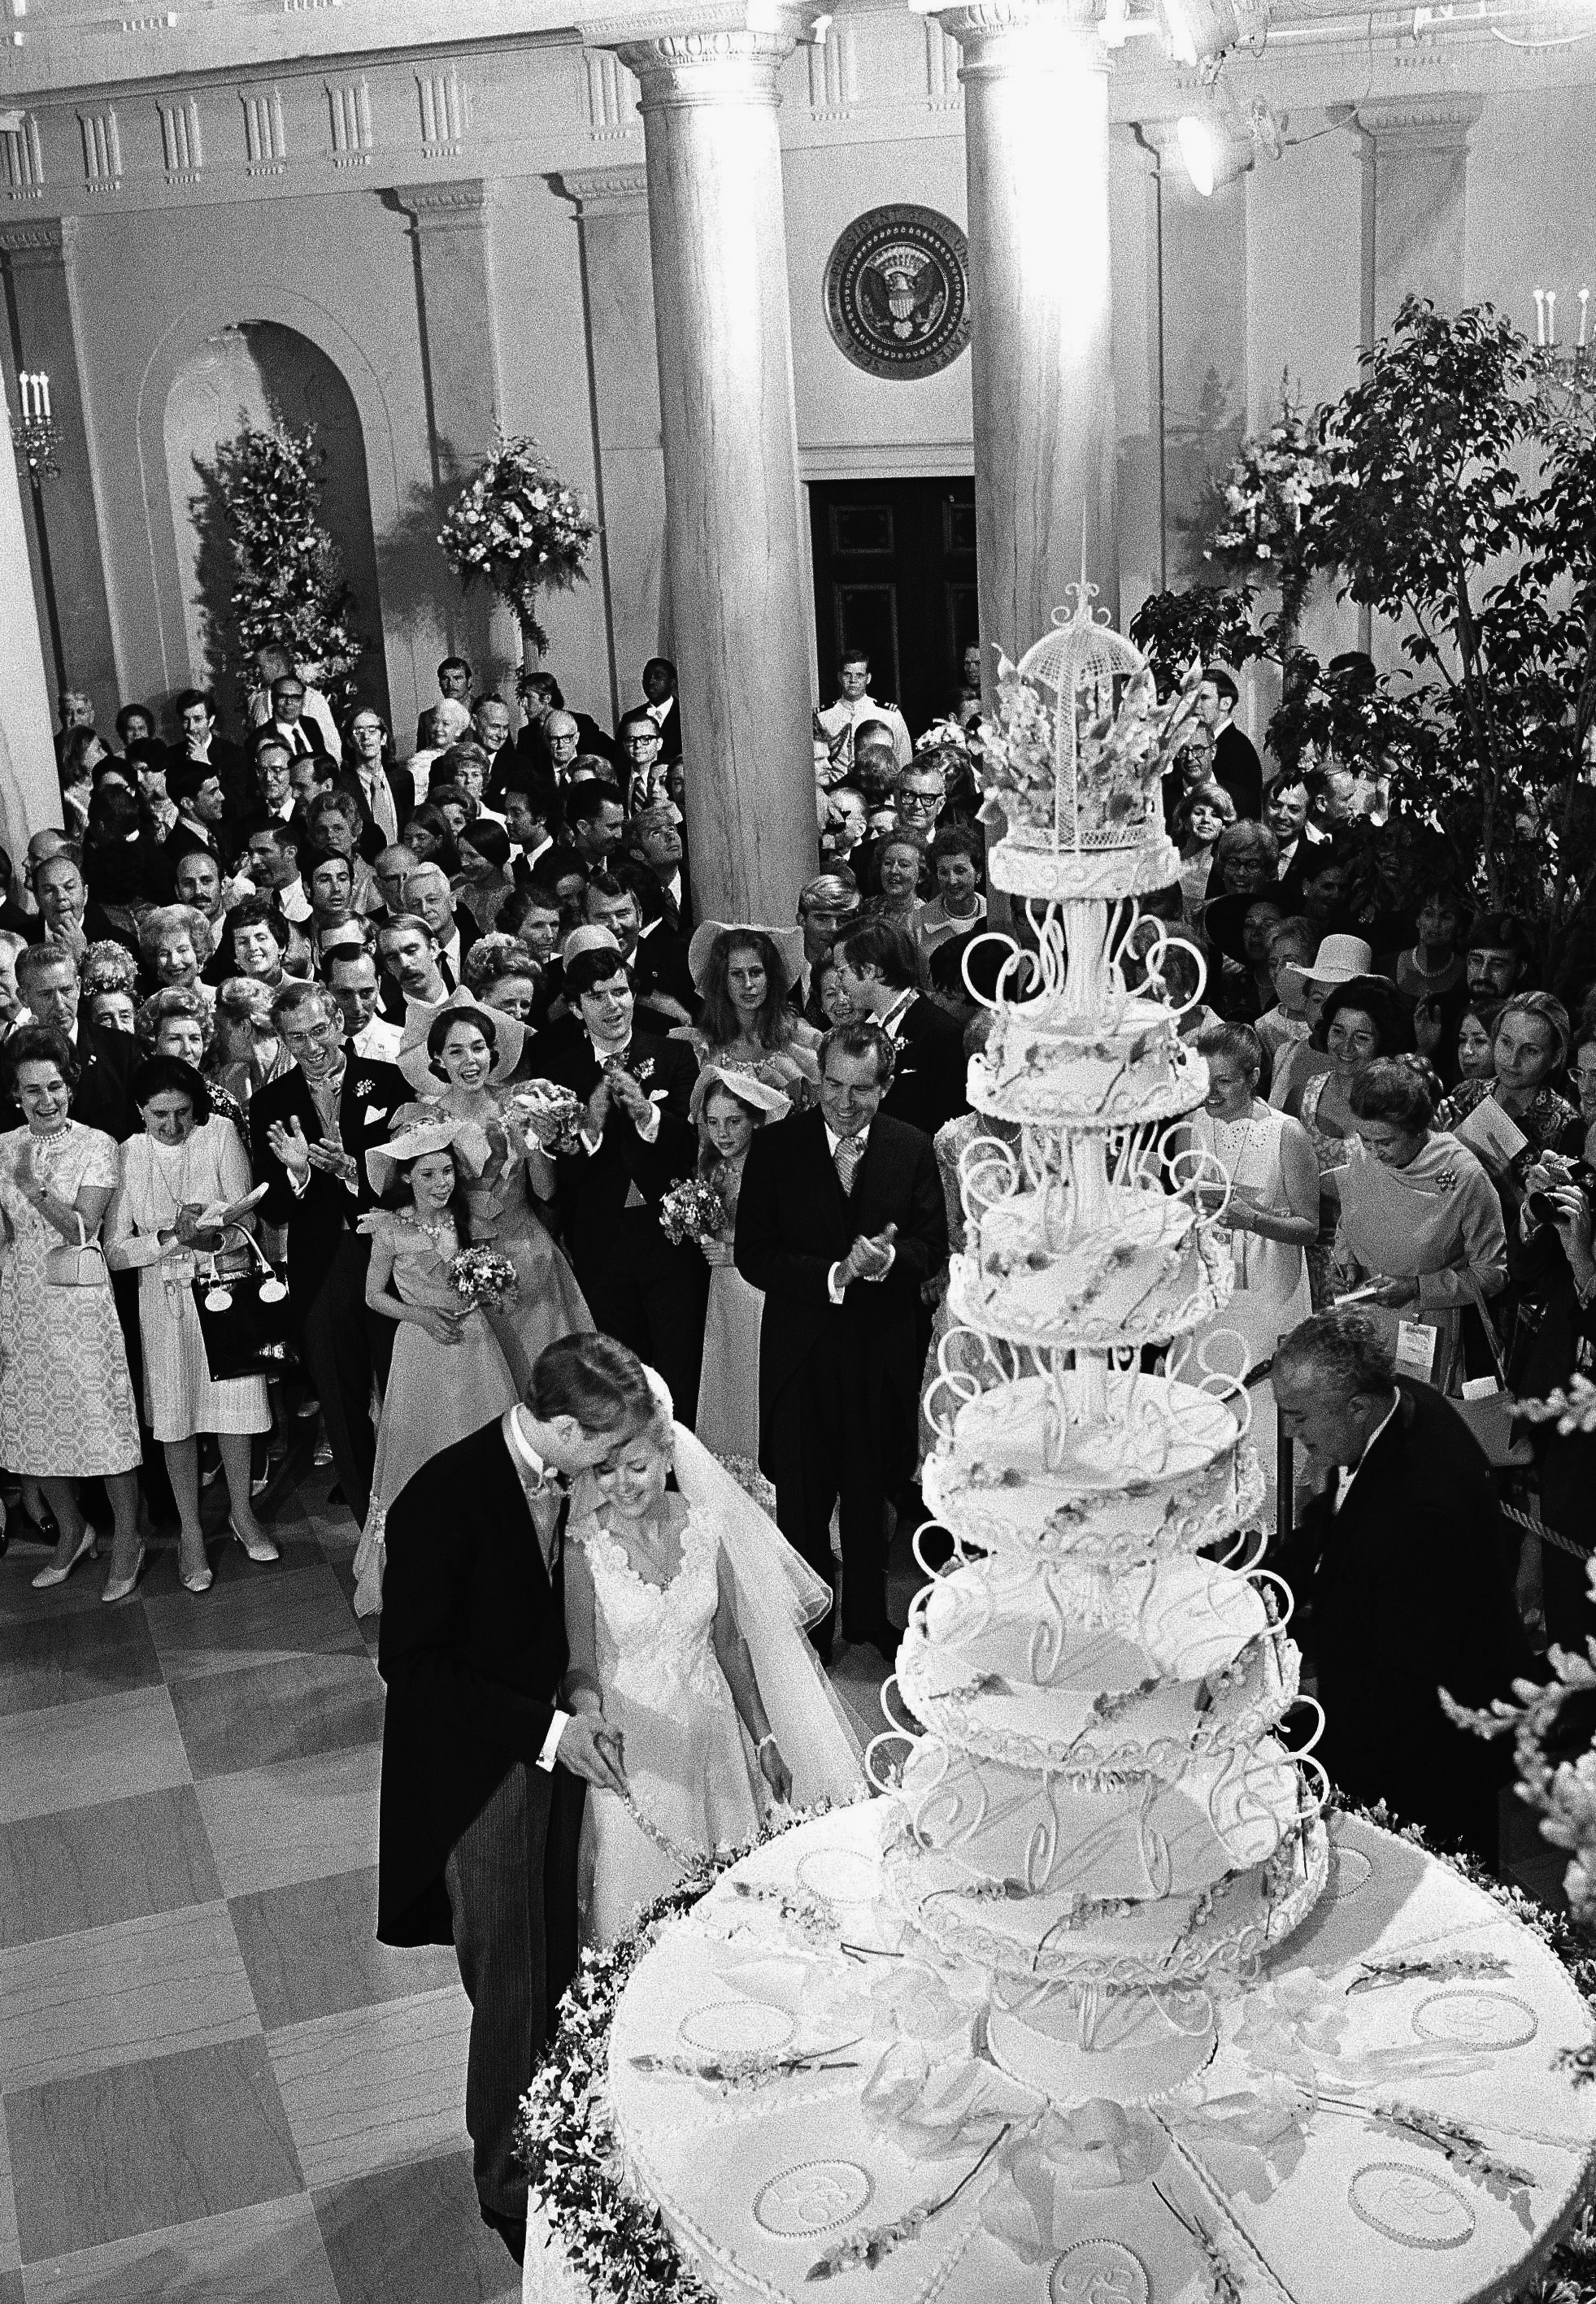 ARCHIVO - El presidente Richard Nixon aplaude cuando su hija Tricia y su esposo Edward Finch Cox, cortan un pastel de bodas gigante en la Casa Blanca, el 12 de junio de 1971. (AP Foto, Archivo)

